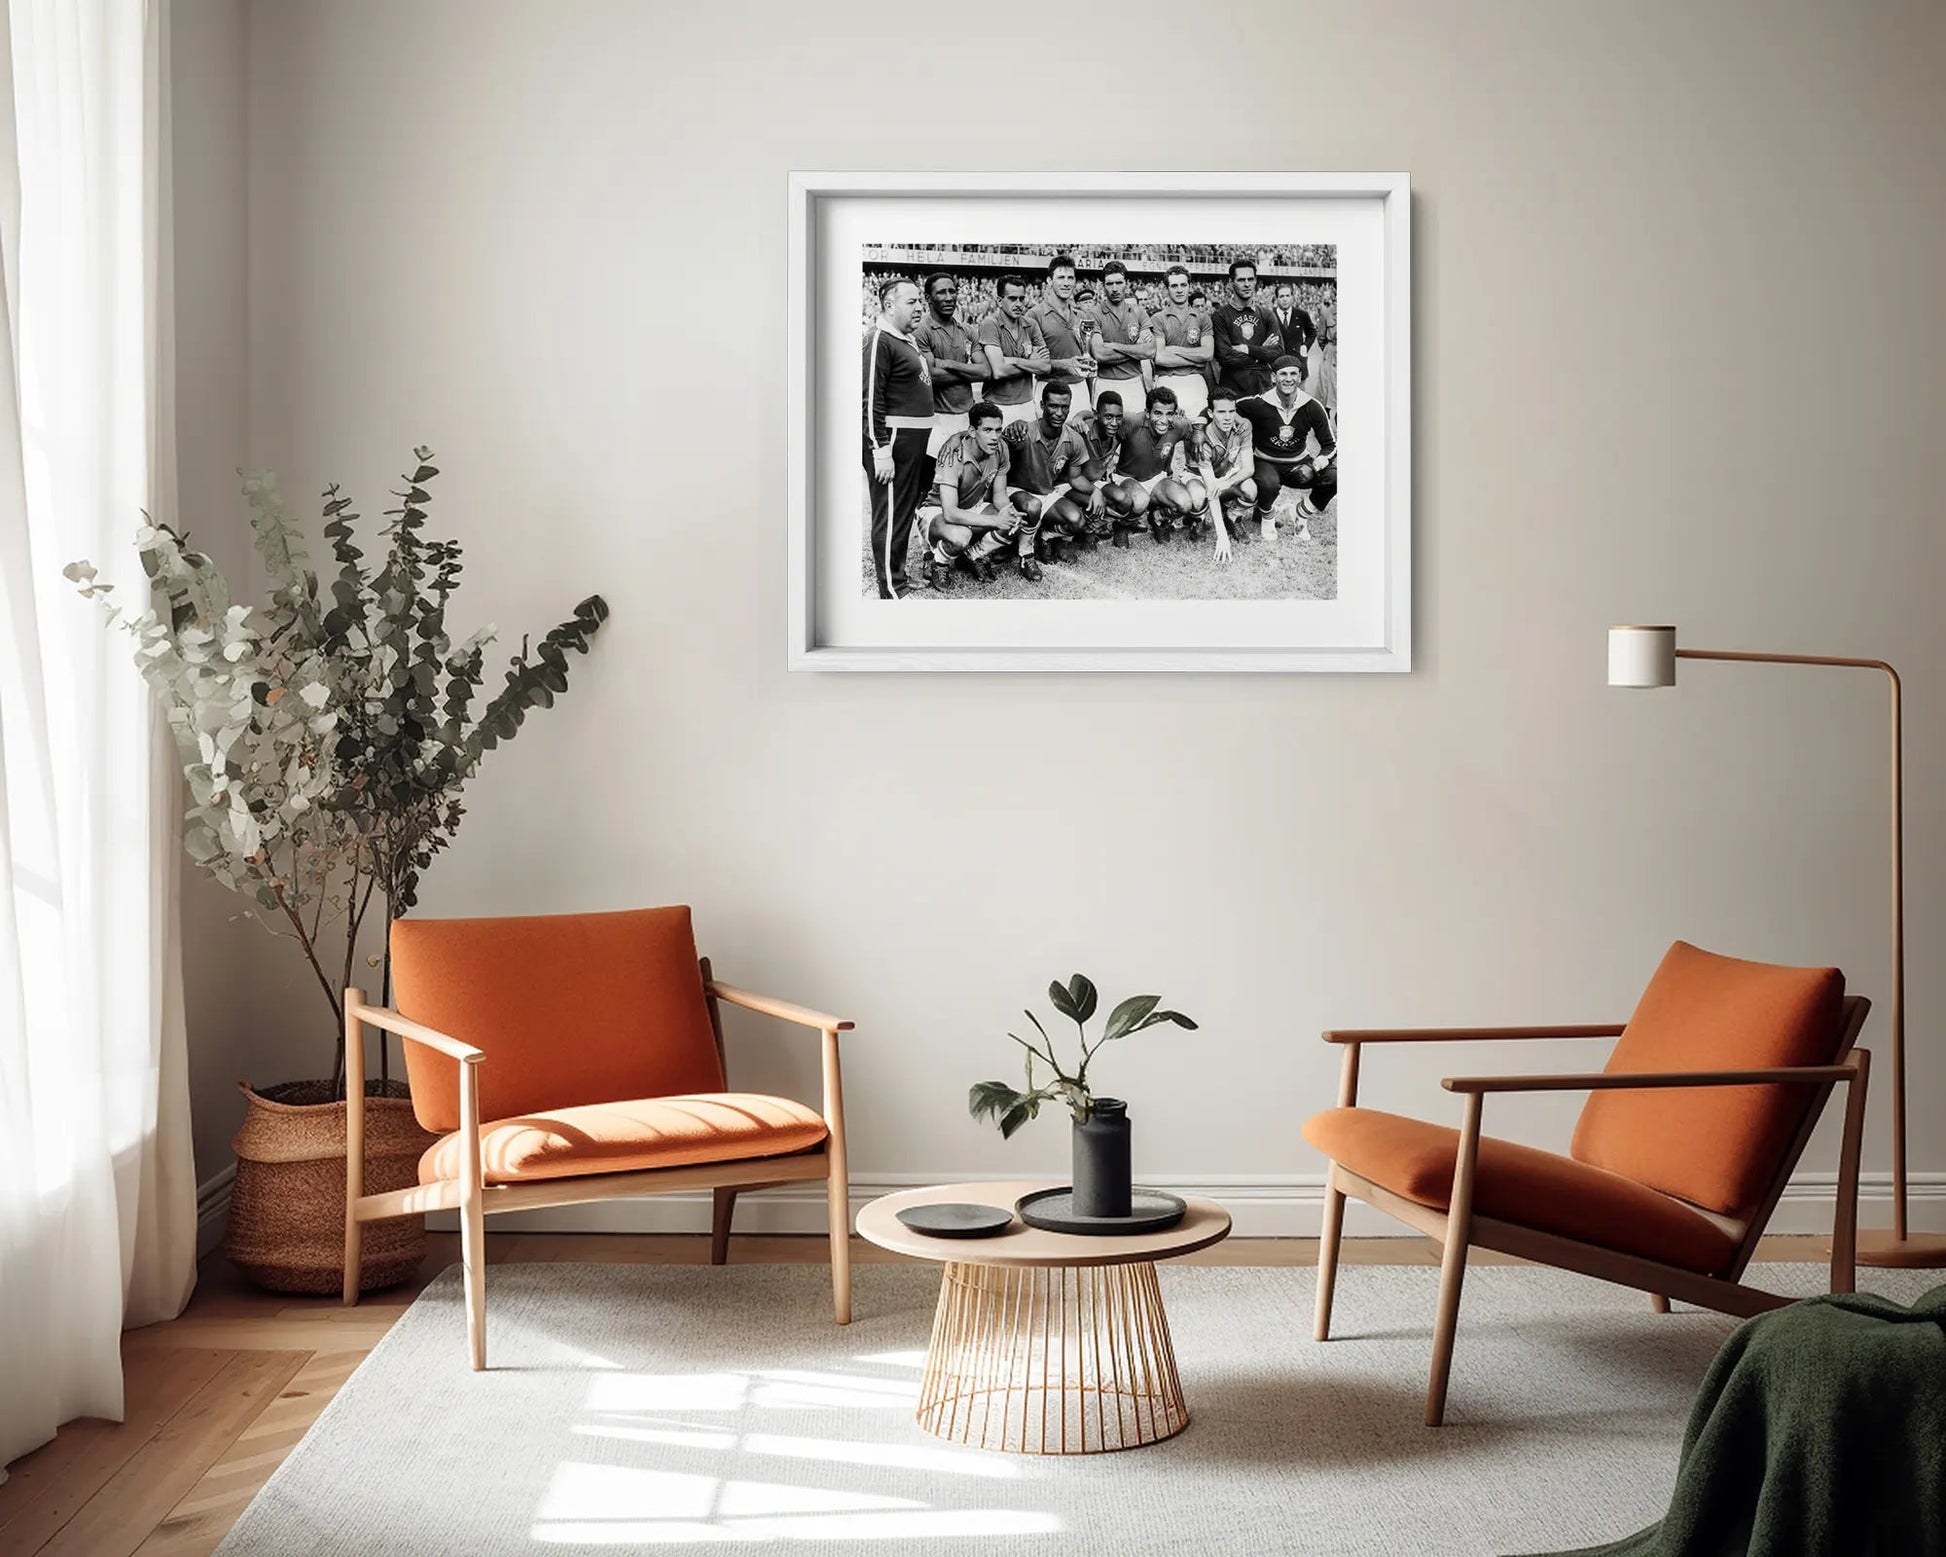 Il Brasile campione del mondo, 1958 - Farabola Fotografia